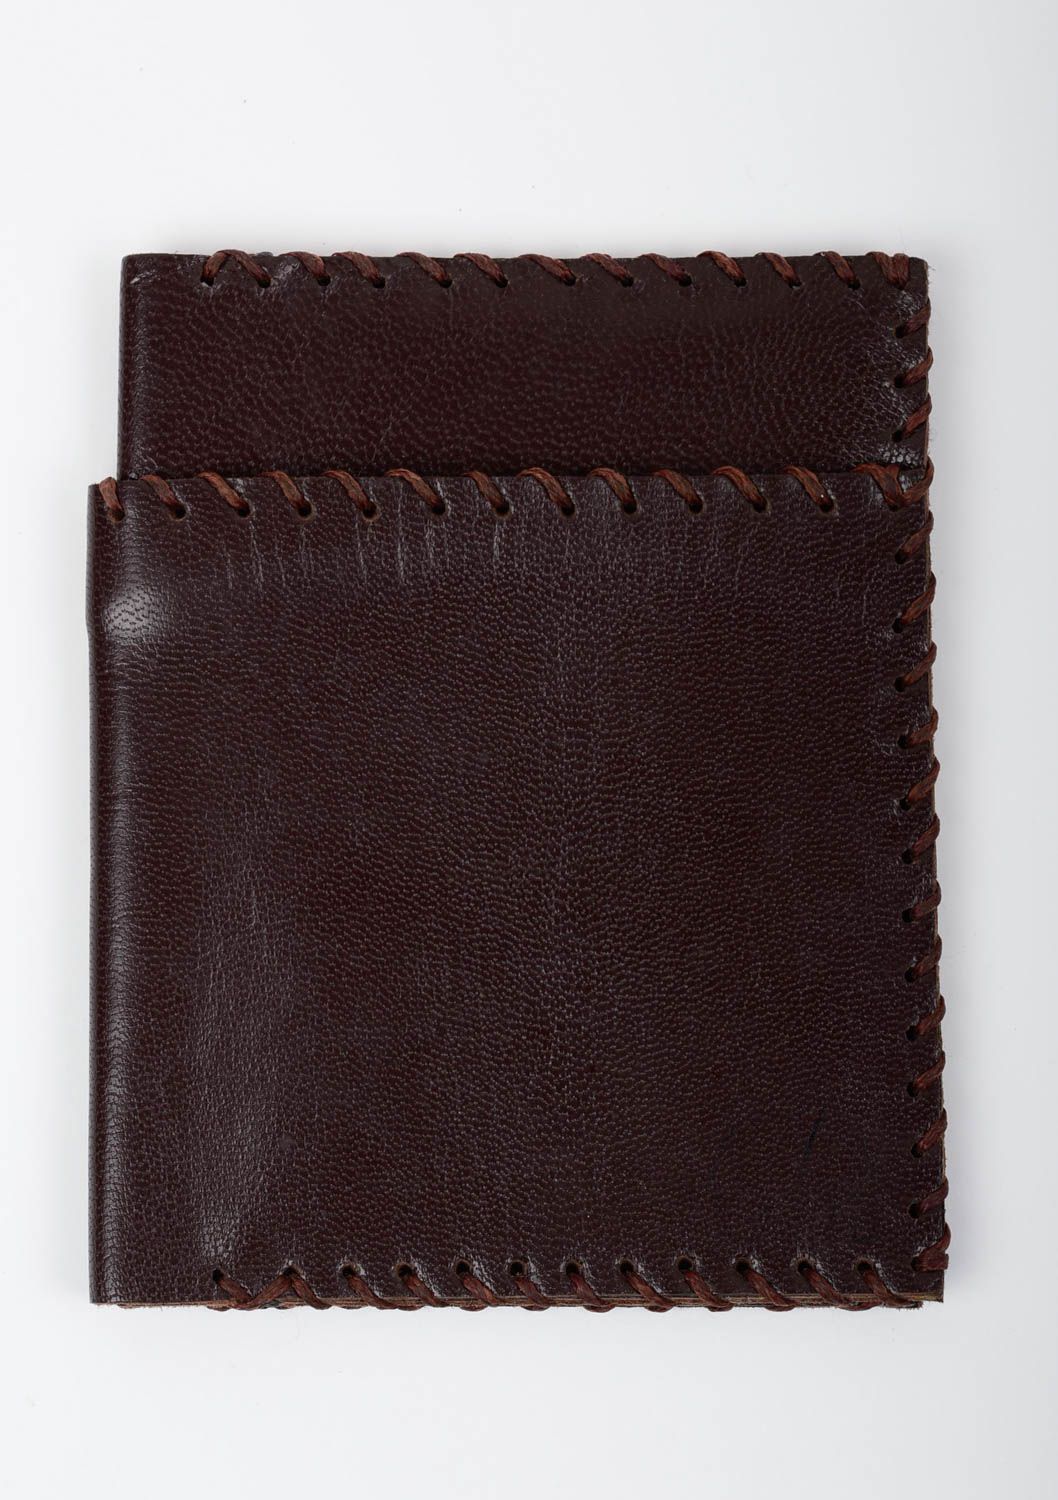 Кожаный кошелек портмоне прямоугольный коричневый красивый стильный хэнд мейд фото 1